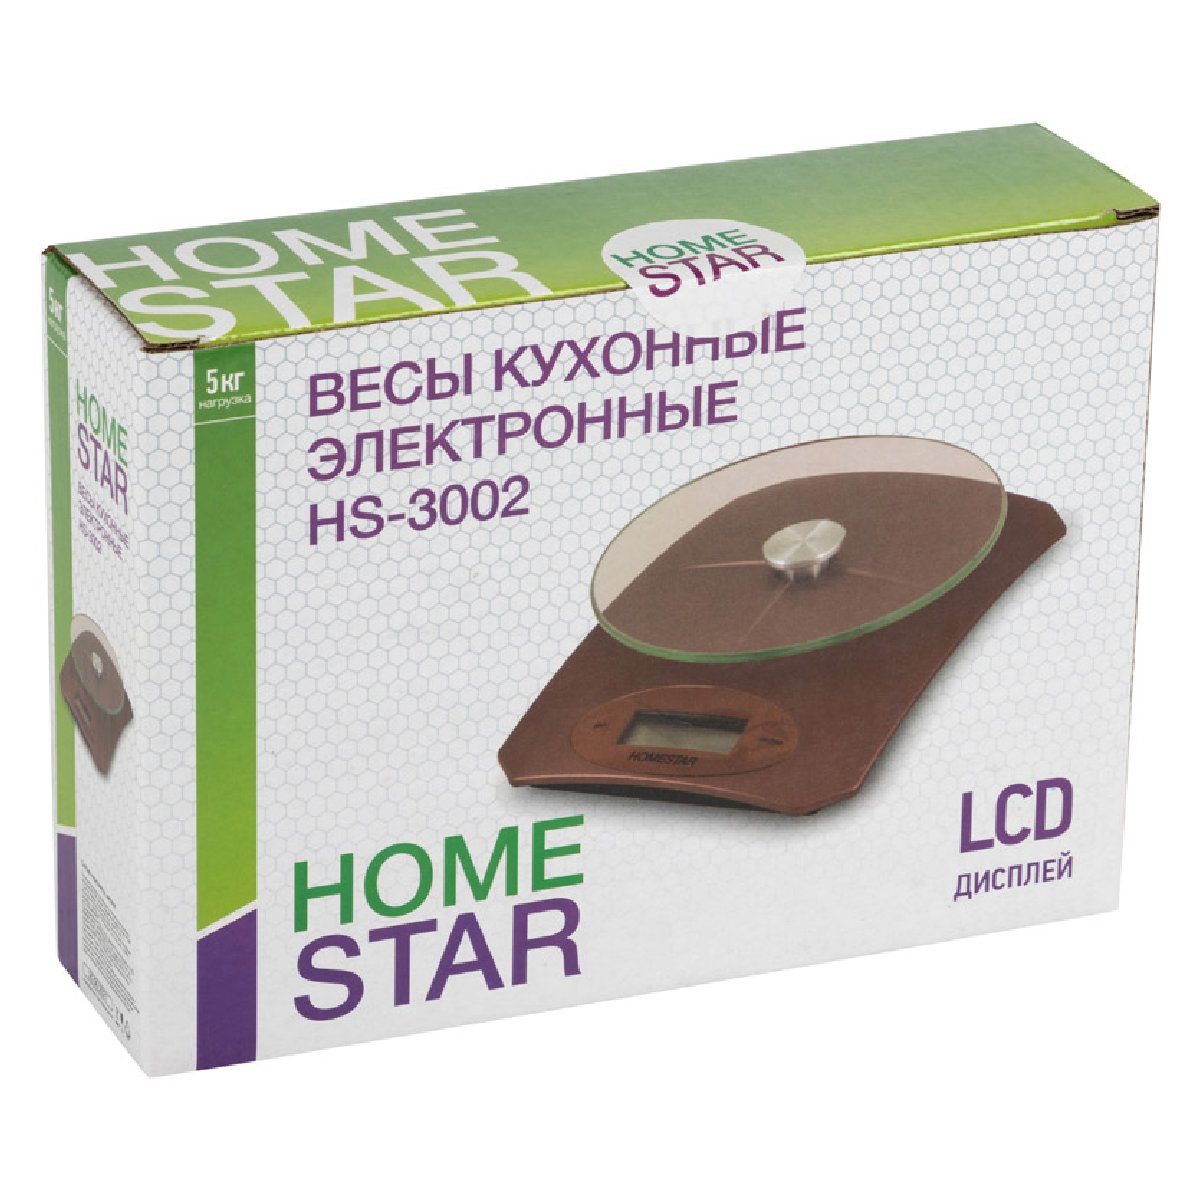 Homestar HS-3002 Электронные кухонные весы 5кг 1г (бежевые) (002663)